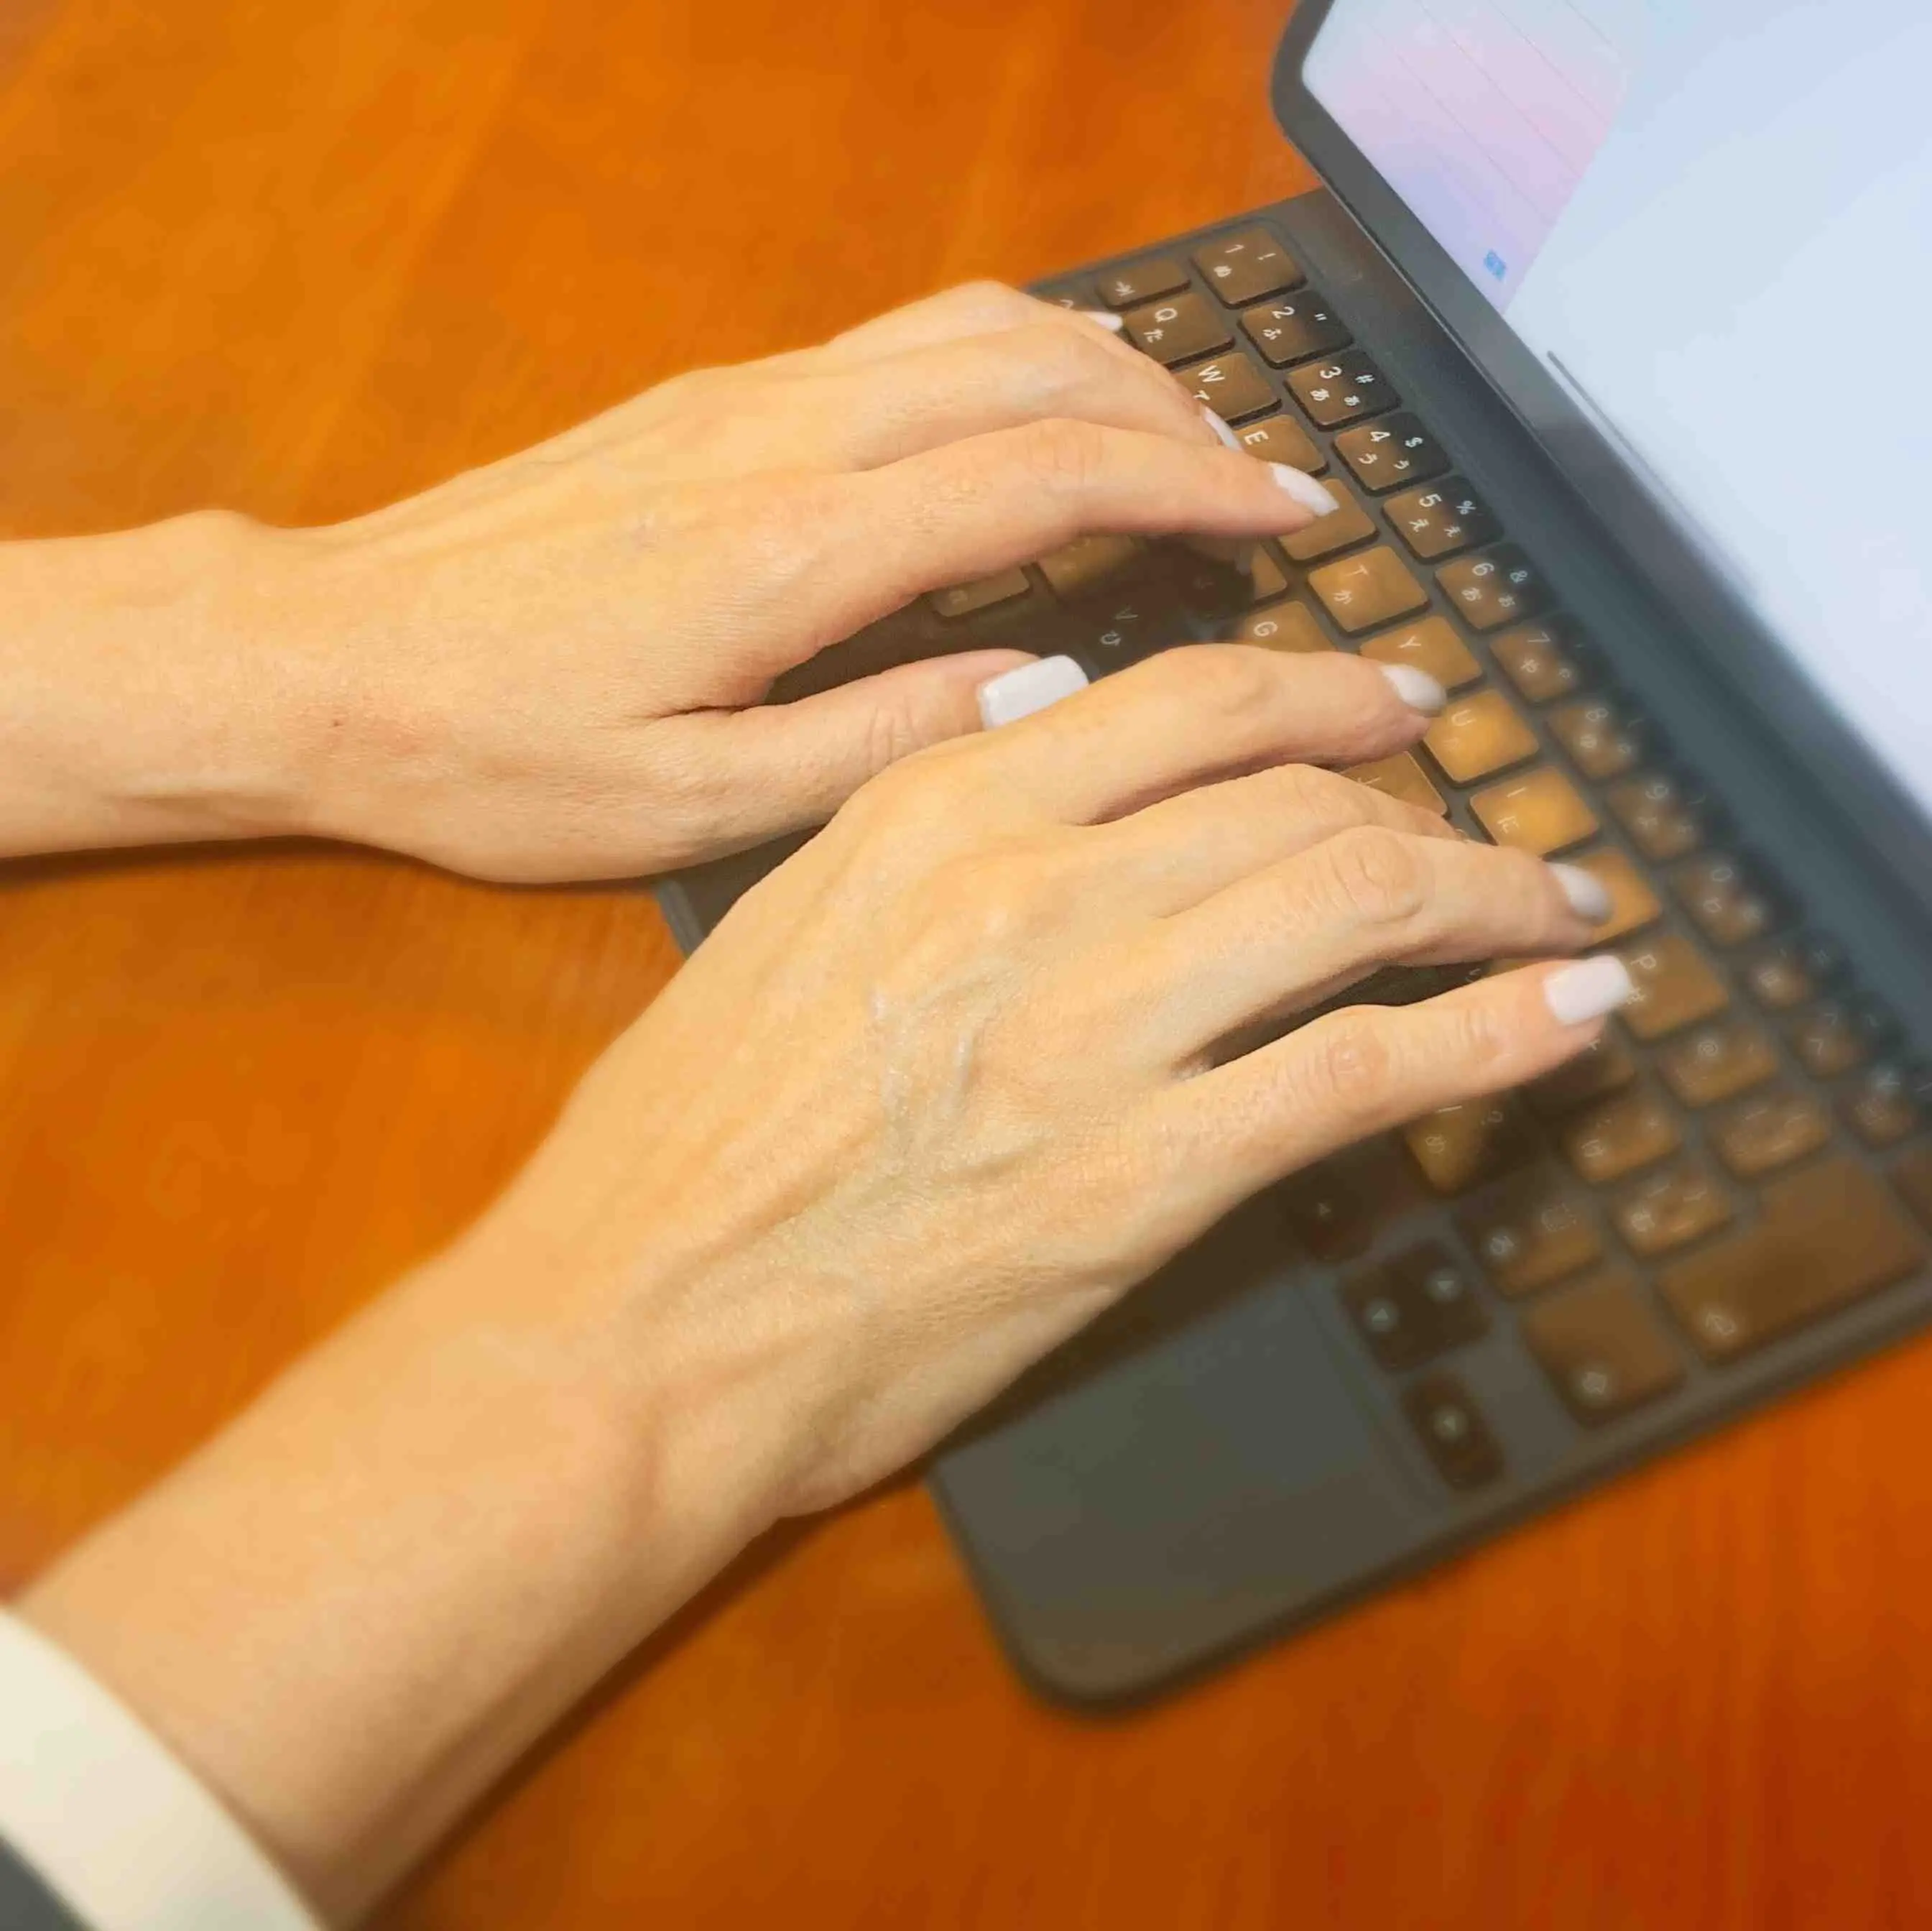 以前より、パソコンのキーボードを打つのがおっくうに感じられるのは、指がよく動かなかったり、タイプミスが多くてイライラしてしまうから。それは指の関節の痛みや、曲がって変形したのが原因かも。